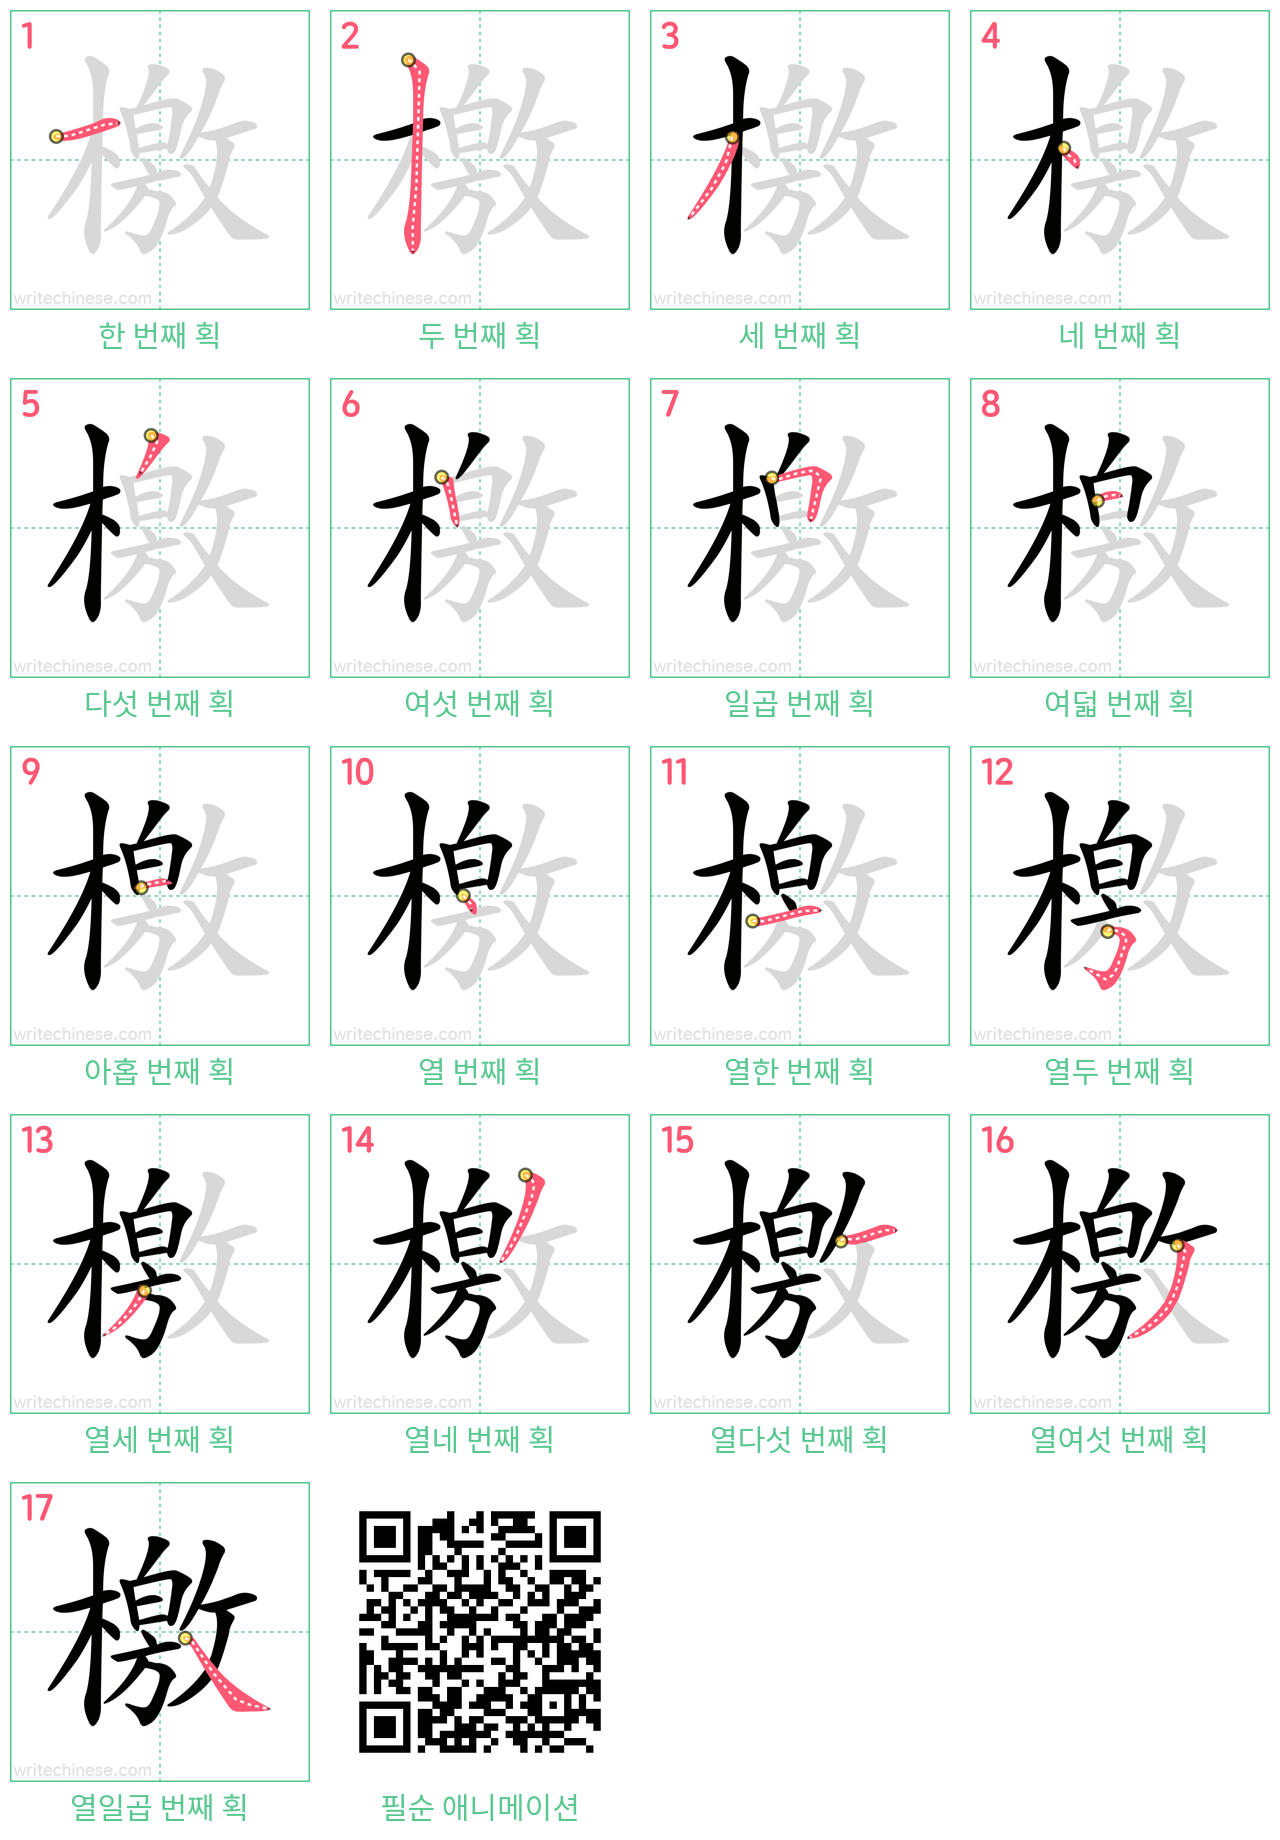 檄 step-by-step stroke order diagrams